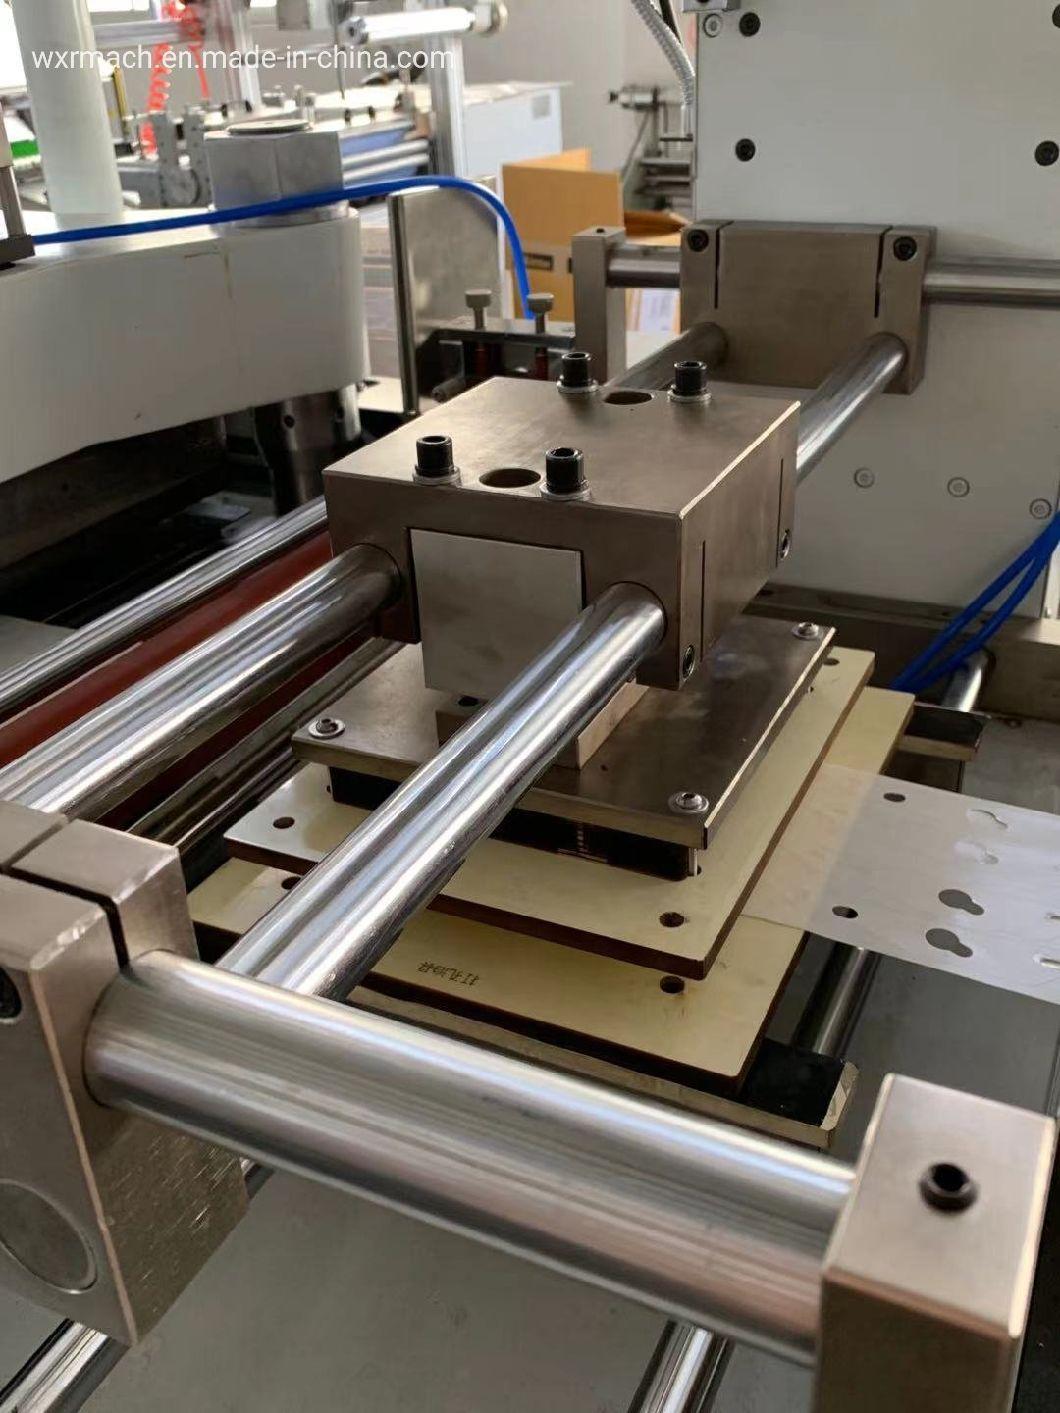 Adhesive Trademark Die Cutting Machine in China